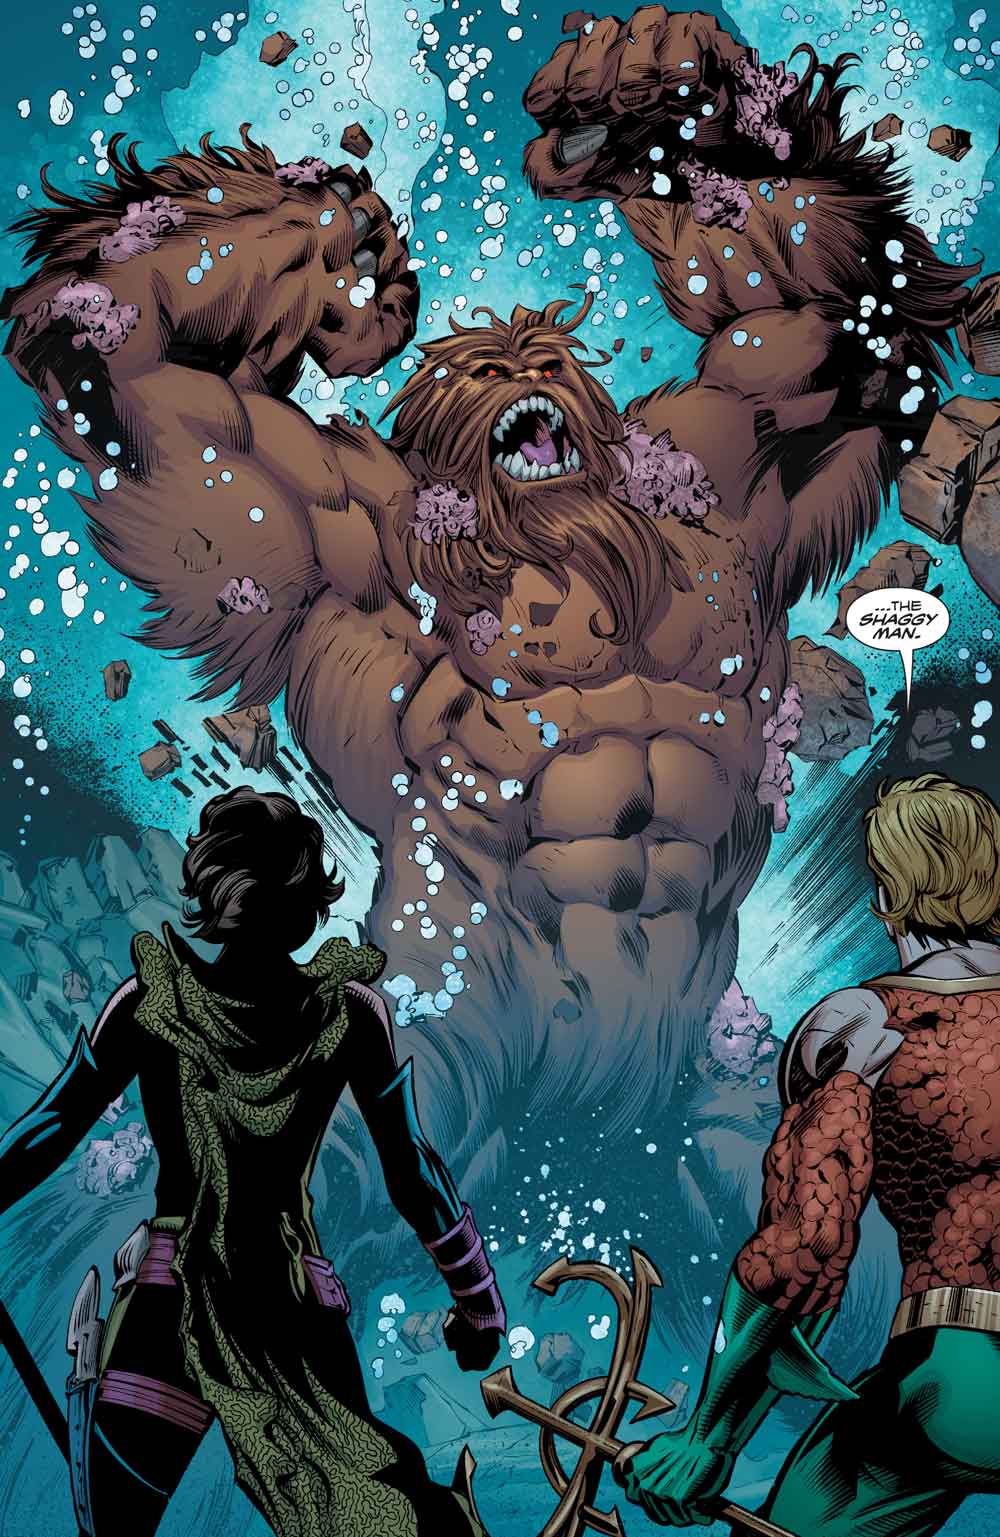 Aquaman #8 by Dan Abnett, Scot Eaton, Wayne Faucher